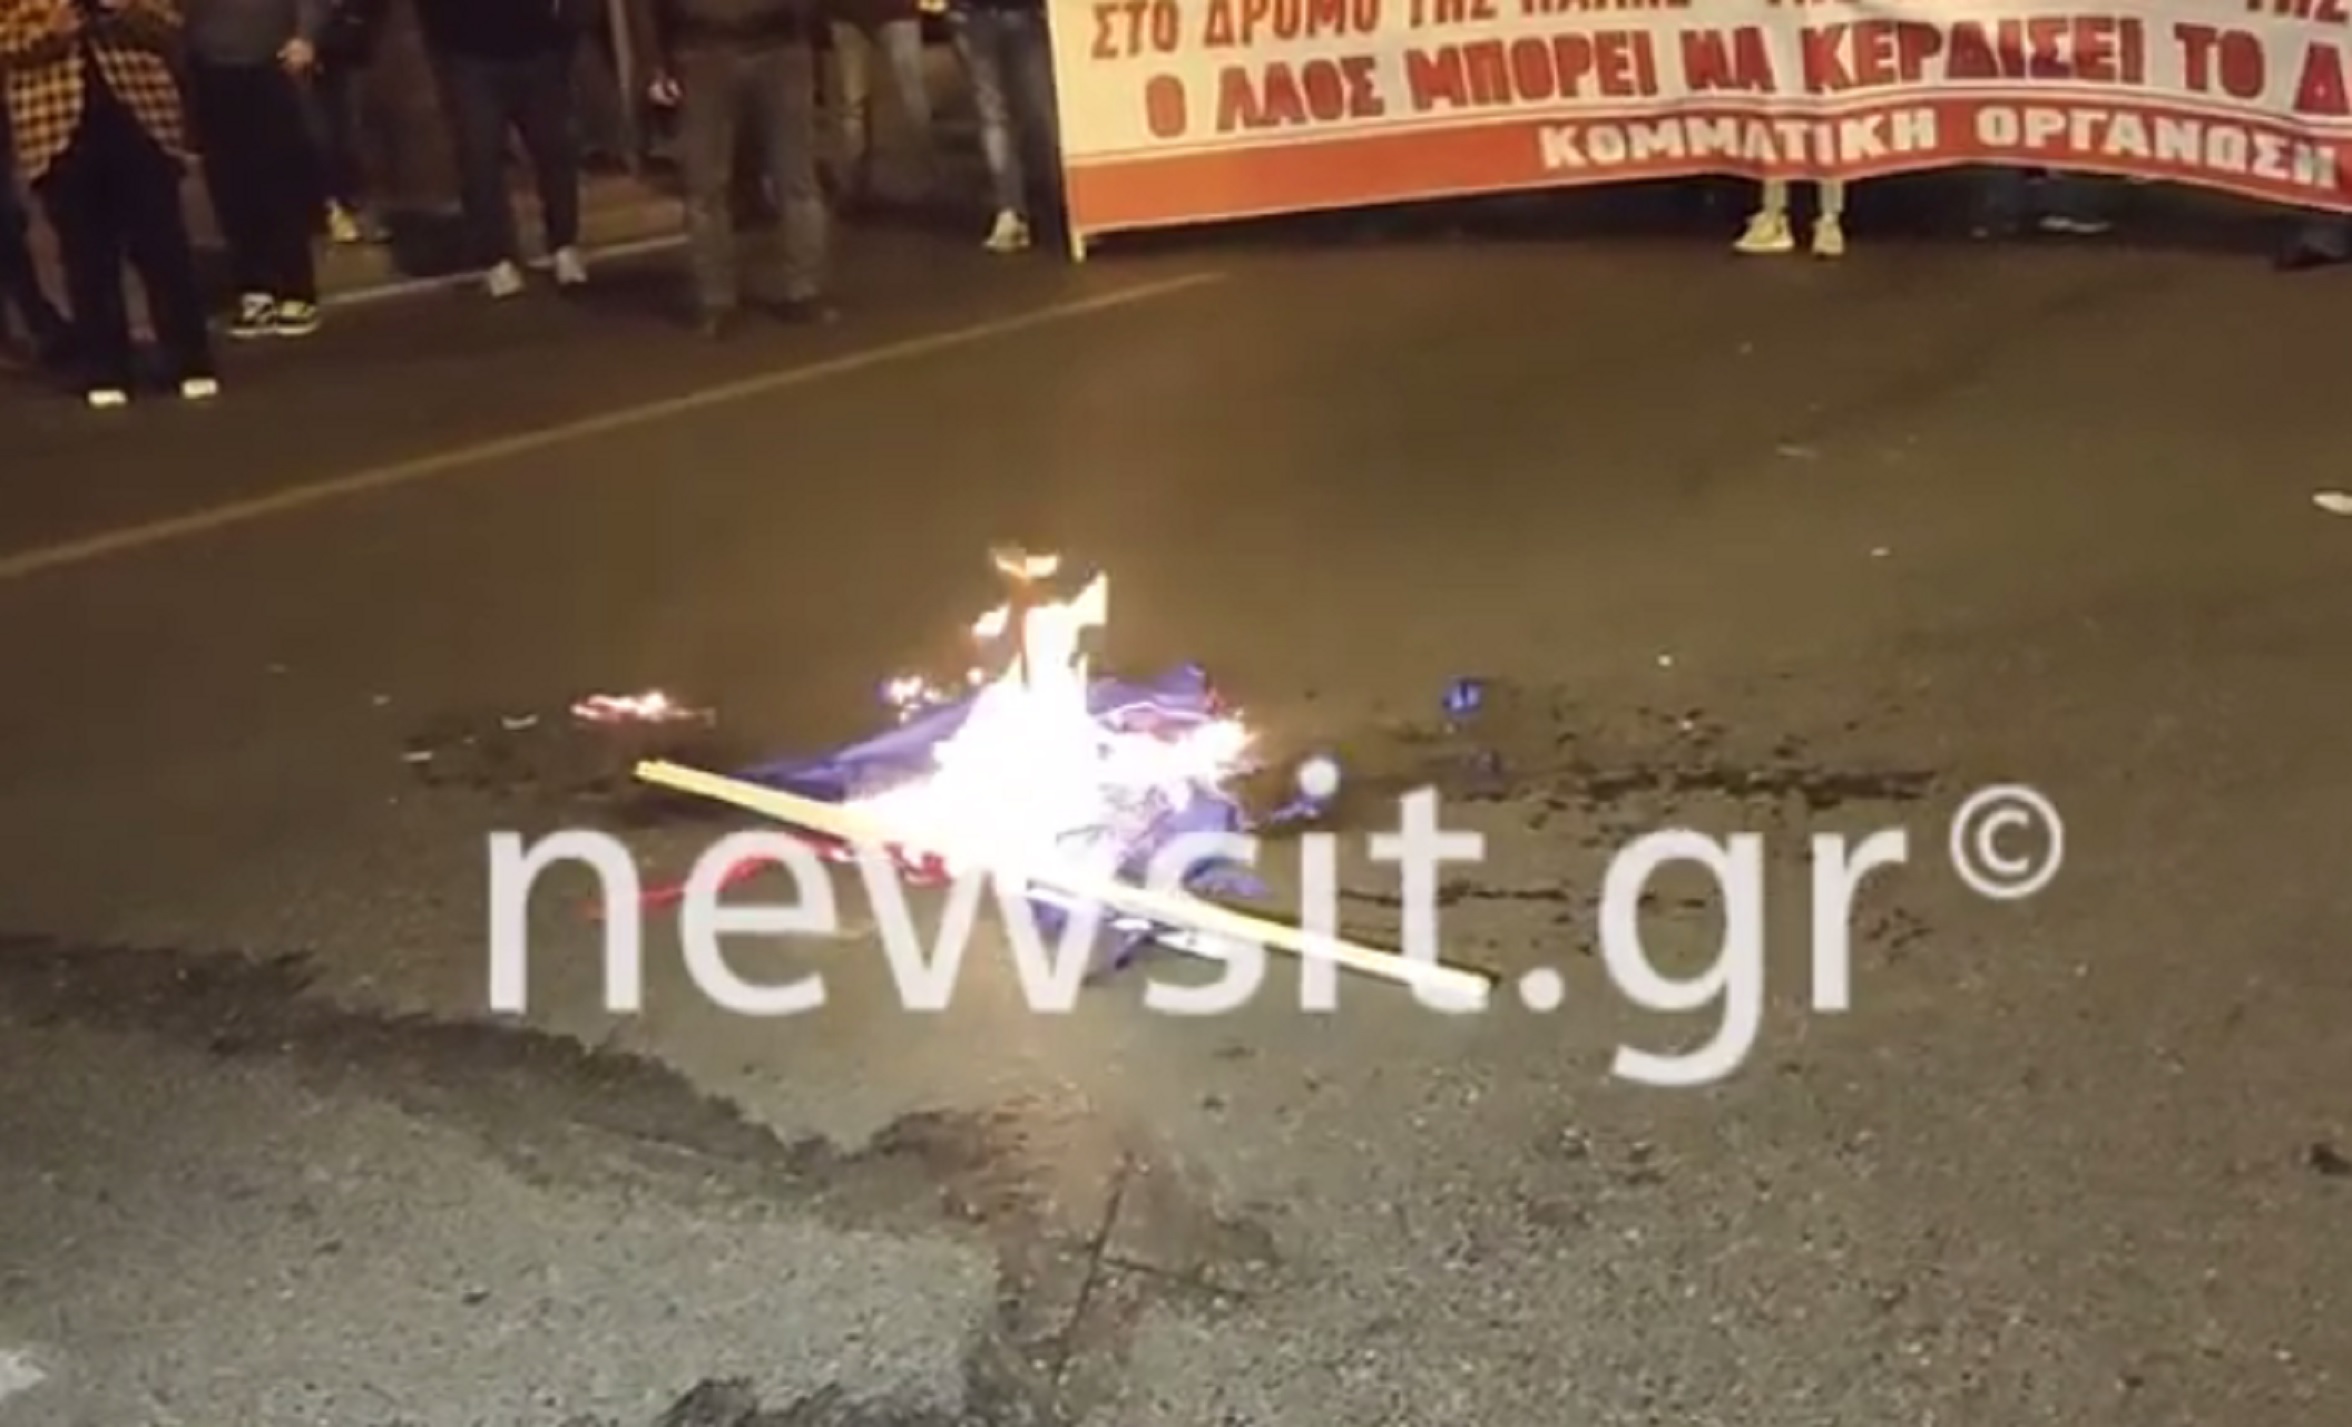 Πολυτεχνείο: Διαδηλωτές έκαψαν την σημαία των ΗΠΑ